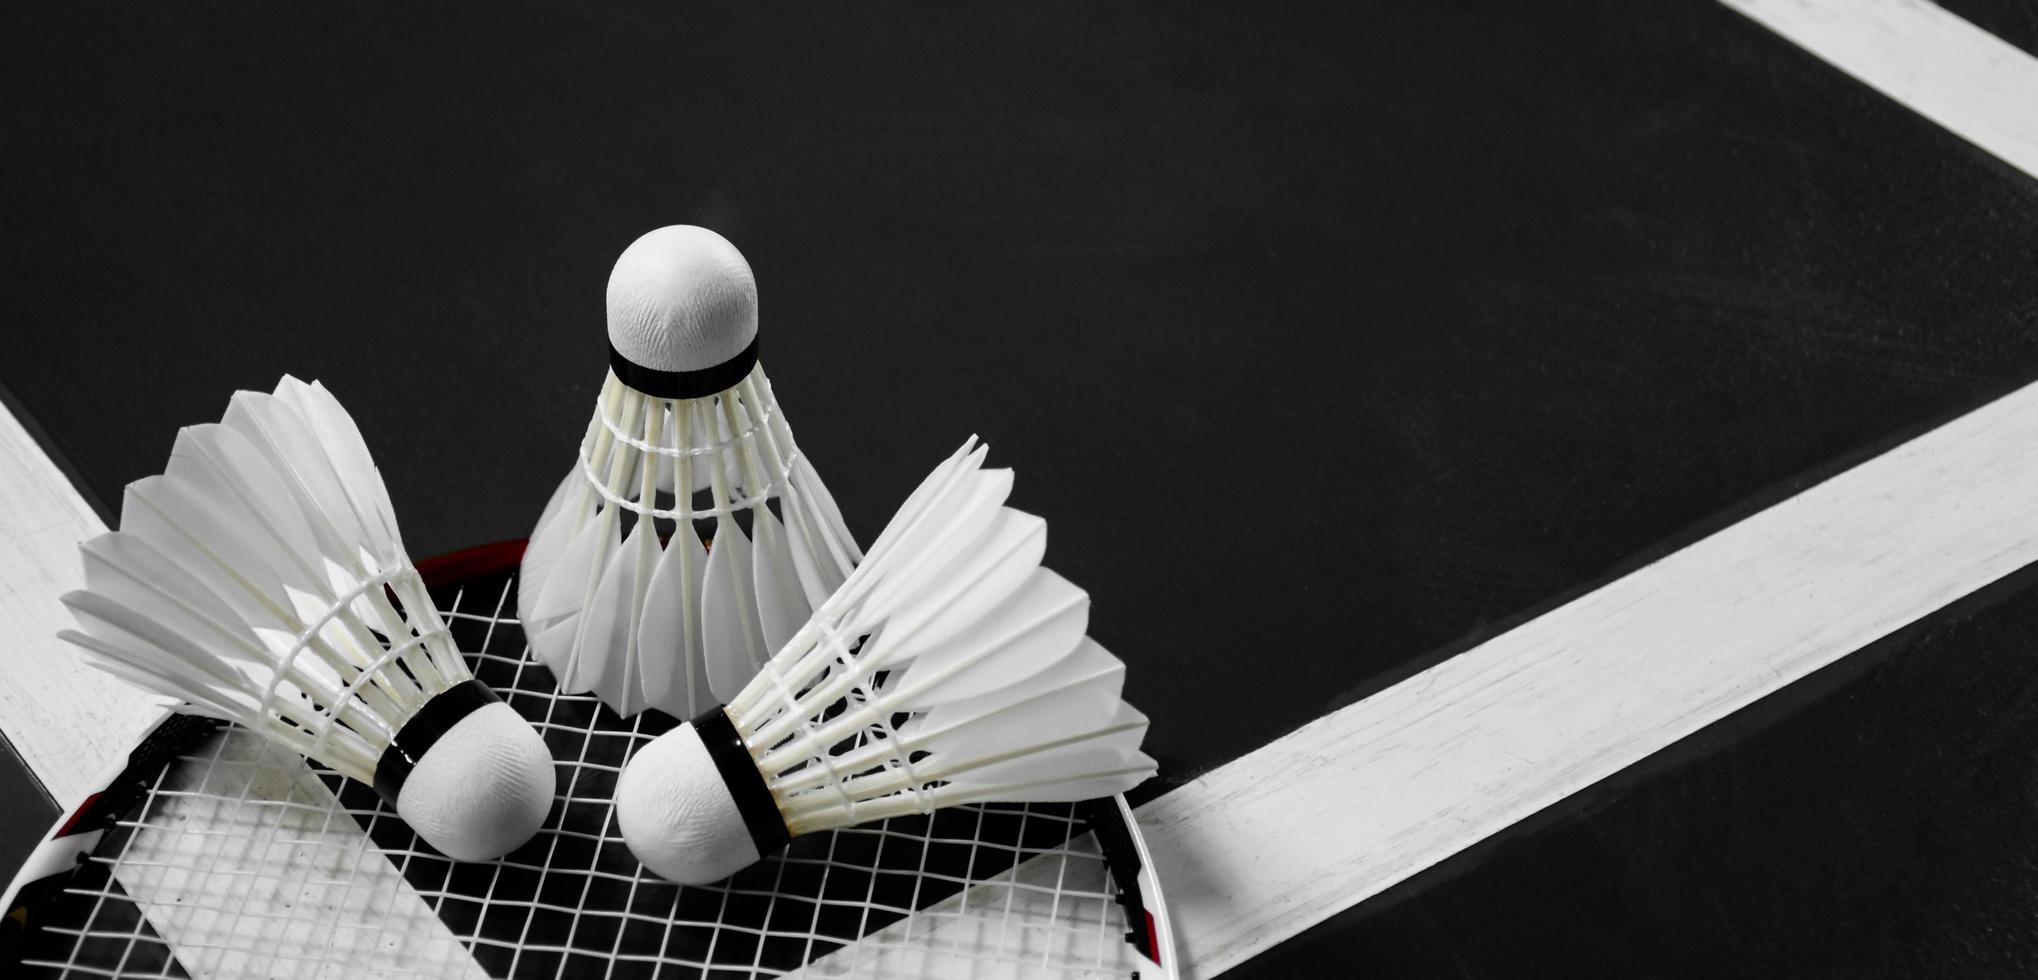 equipamentos esportivos de badminton, petecas, raquete, aderência, no chão da quadra de badminton coberta. foto